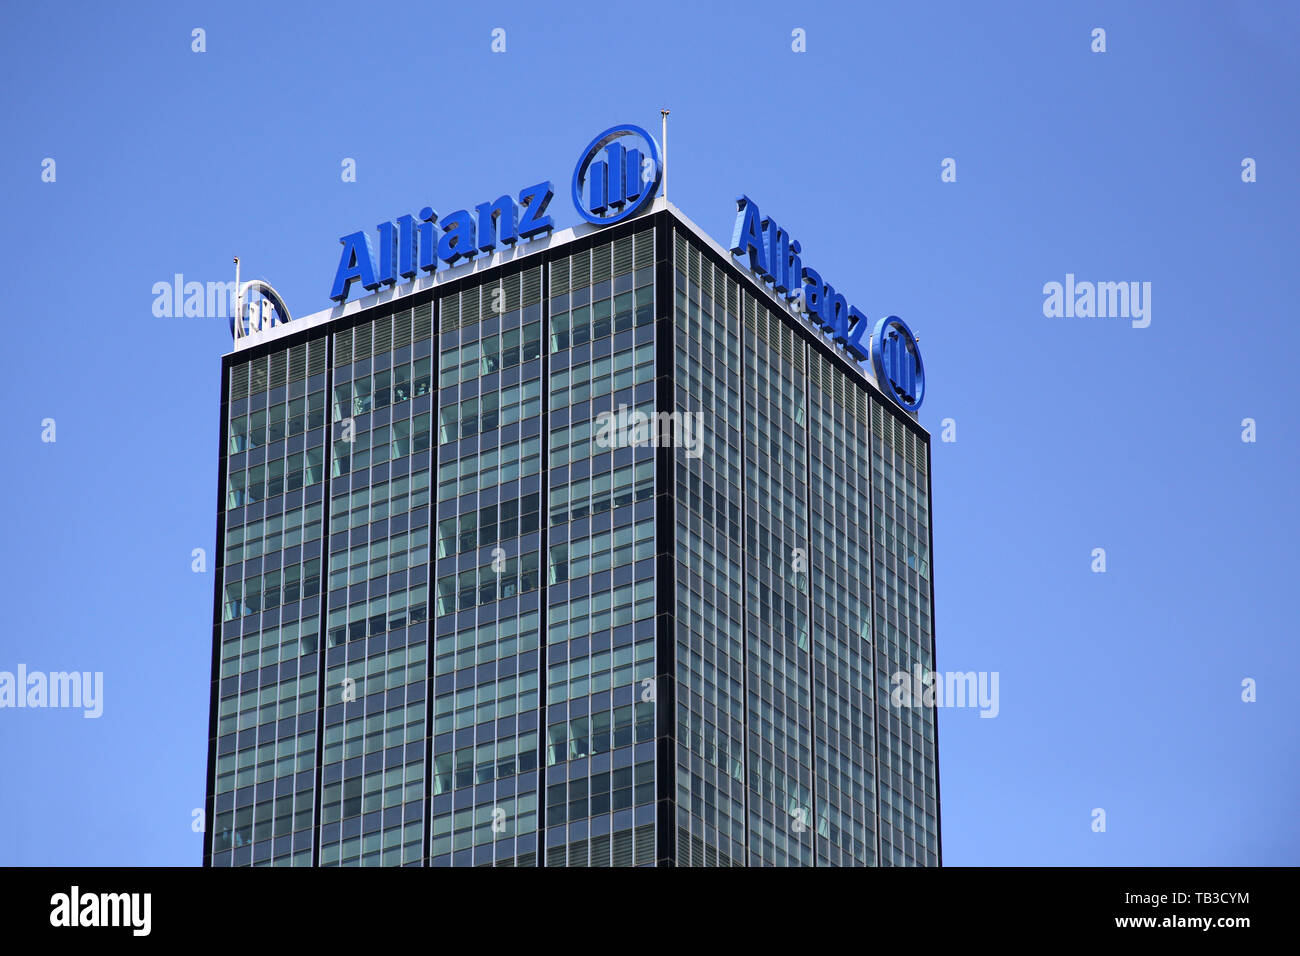 14.07.2018, Berlin, Berlin, Germania - Torre del complesso edilizio Treptowers con la scritta dell' assicurazione Allianz. 00S180714D860CAROEX.JPG [M Foto Stock